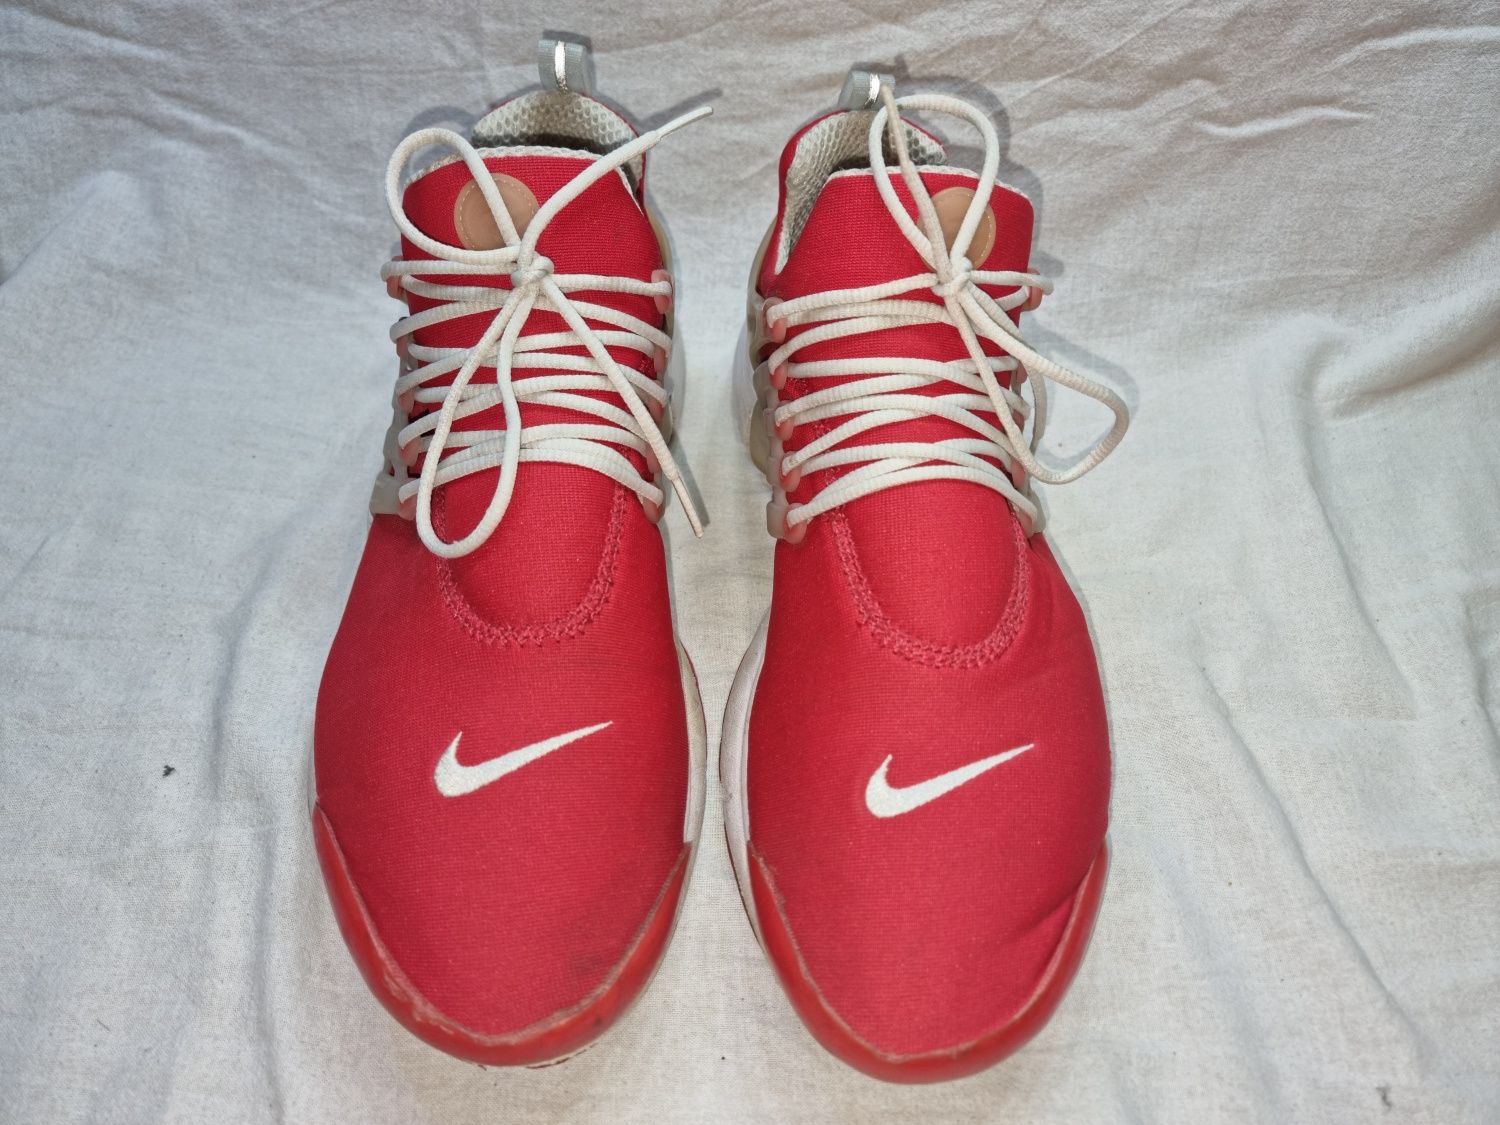 Buty Nike Presto Comet Red roz. XL 47.5-49.5